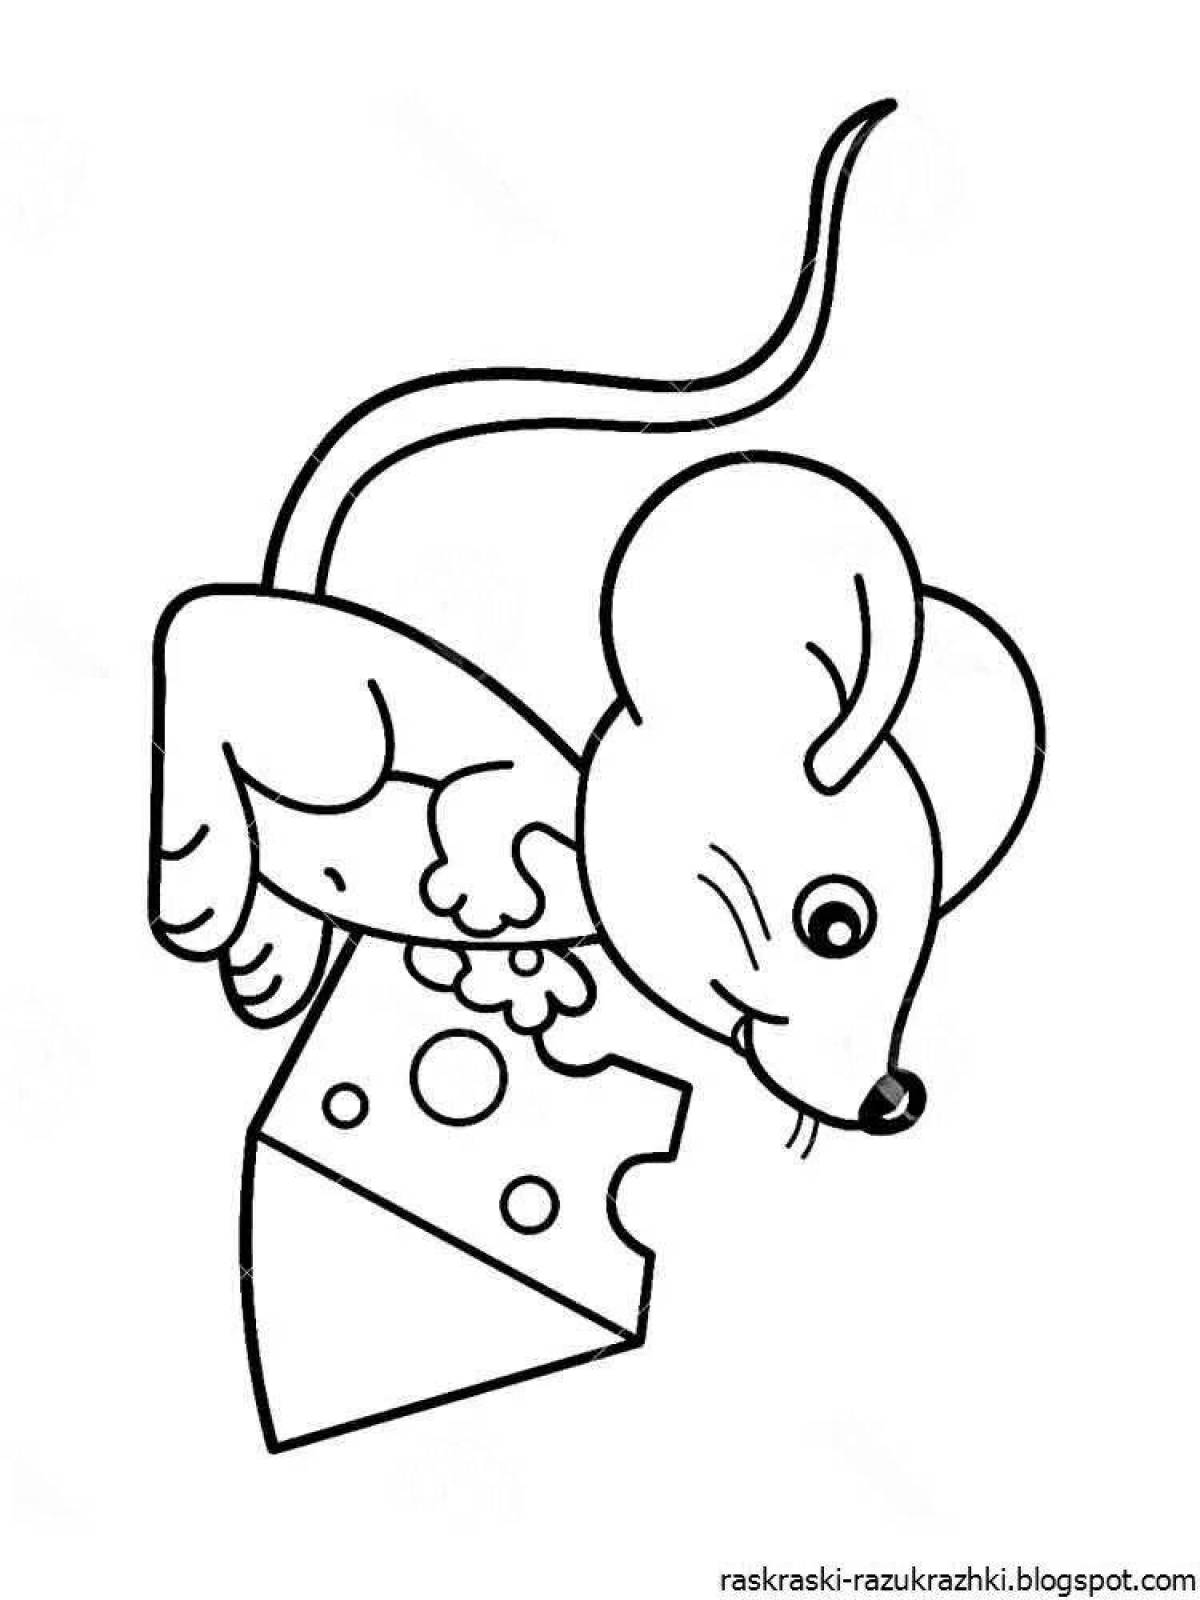 Мышка рисунок детский простой